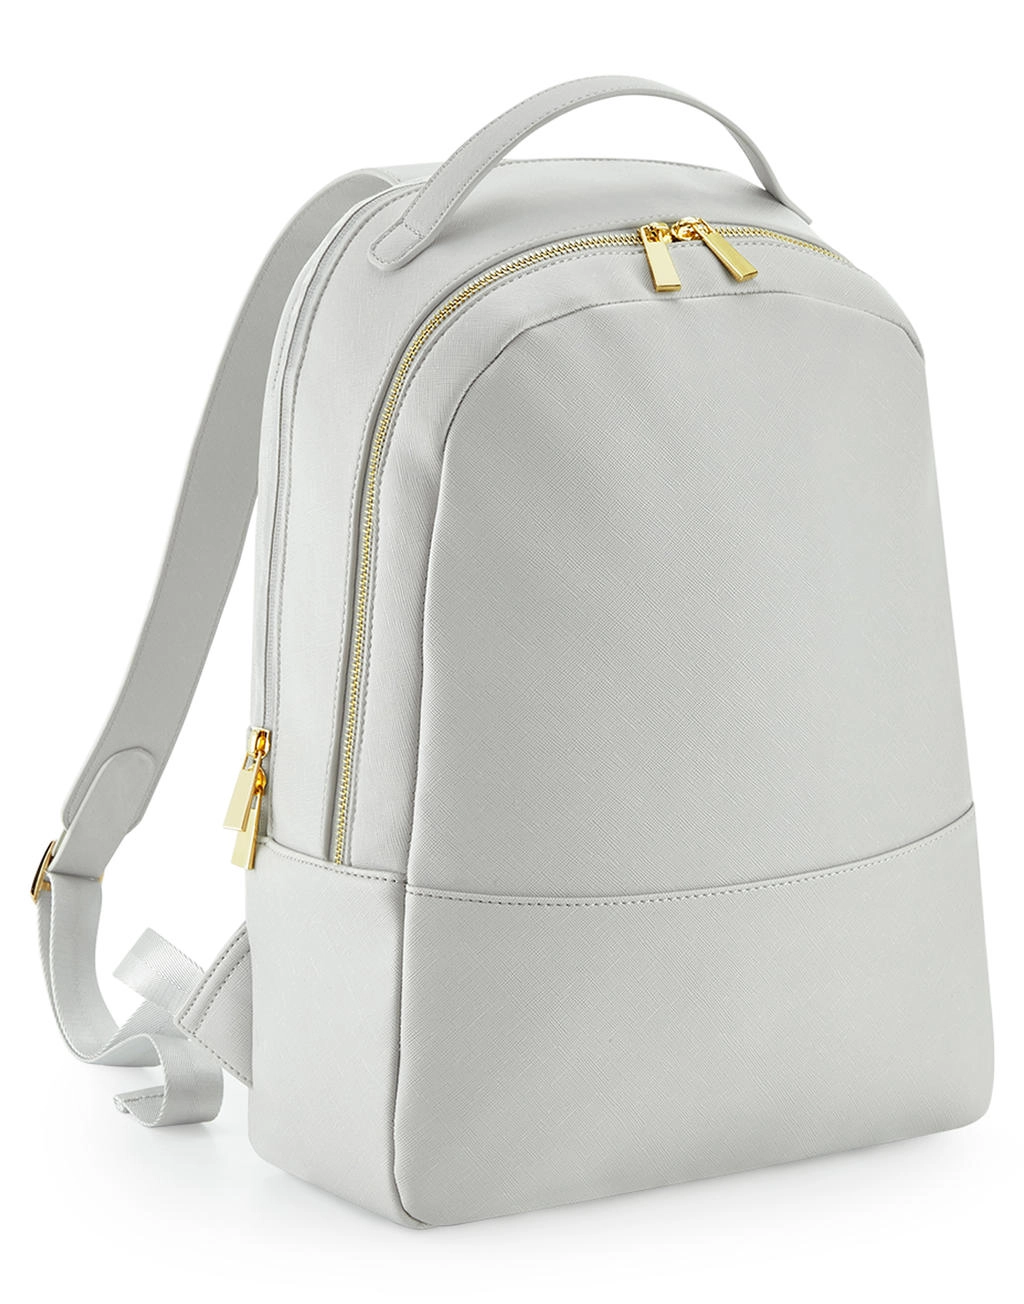 Boutique Backpack zum Besticken und Bedrucken mit Ihren Logo, Schriftzug oder Motiv.